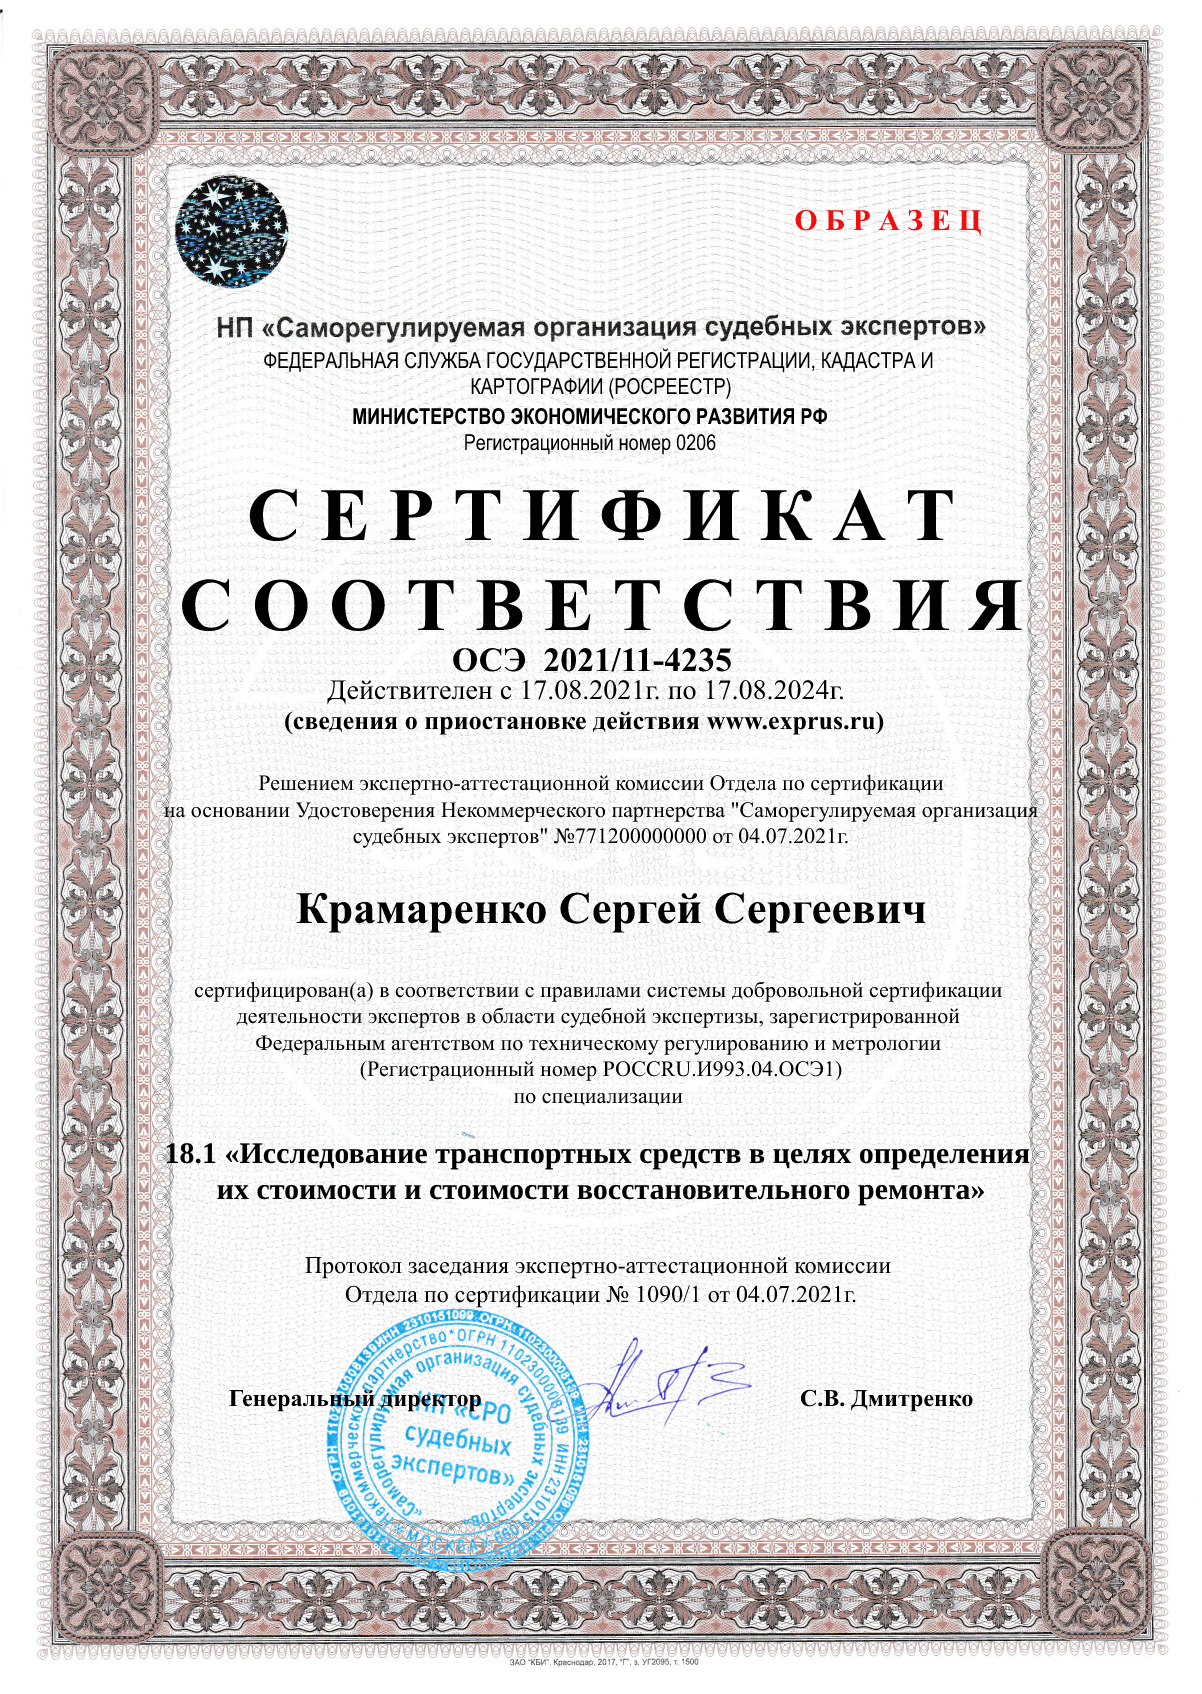 Сертификат соответствия компетентности эксперта по заявленным экспертным специализациям (по всем специализациям экспертной группы) Экспертиза восстановительного ремонта